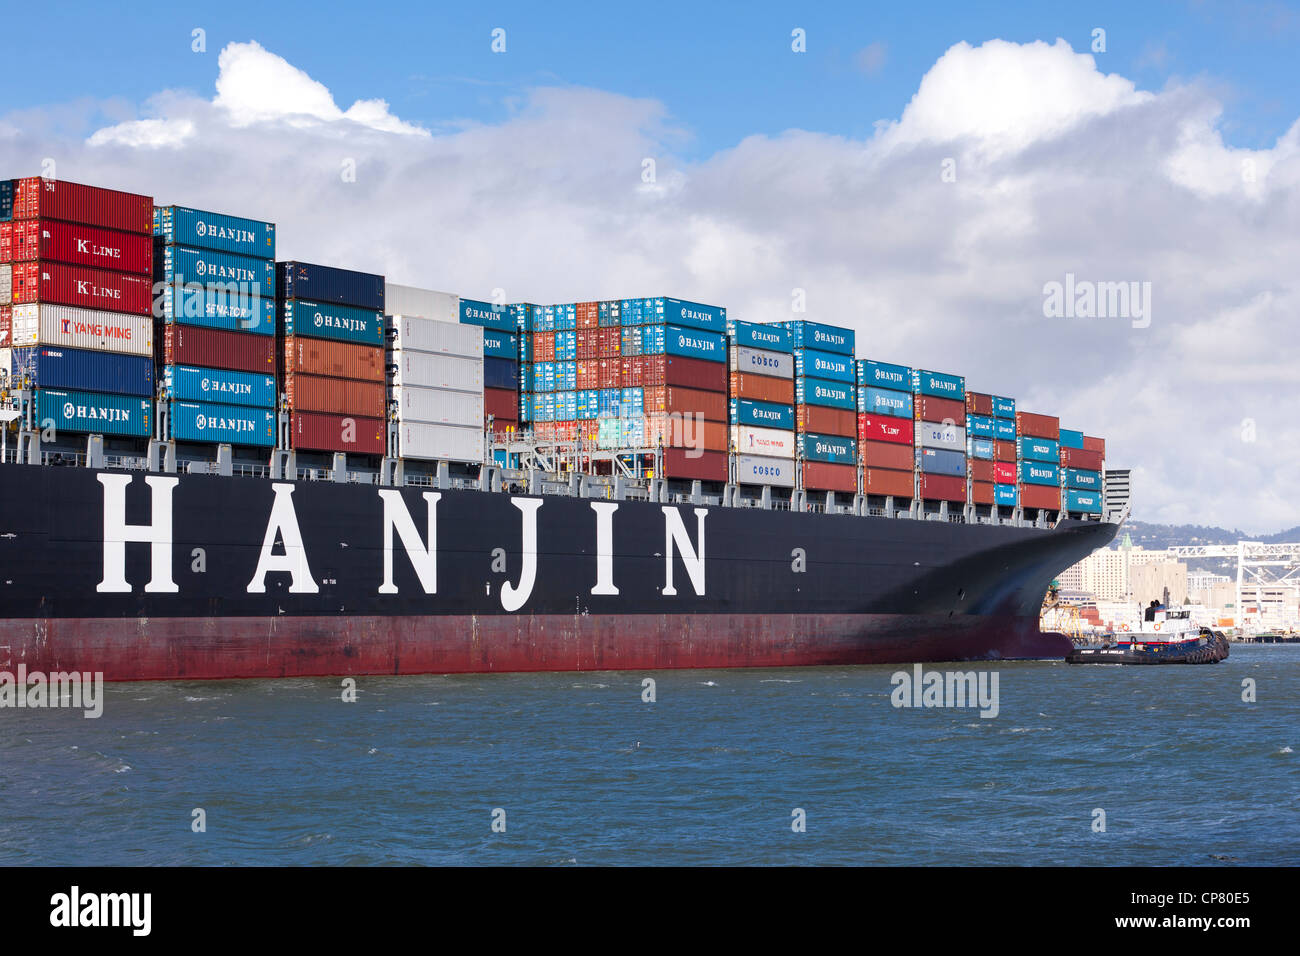 Hanjin shipping container ship entering the port of Oakland - California USA Stock Photo